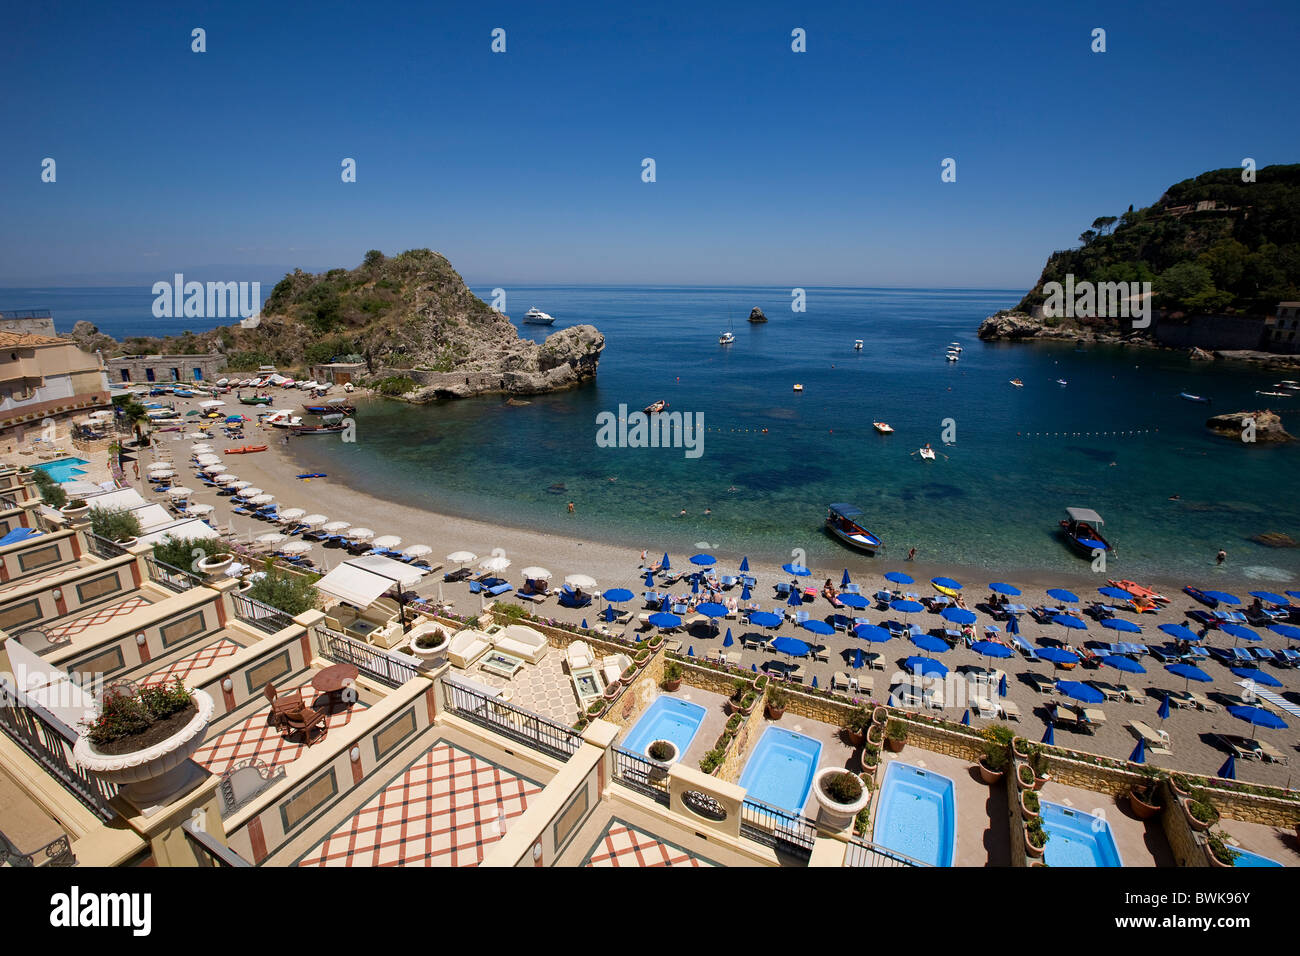 View from the Hotel Mazzaro Sea Palace on Mazzaro bay, Taormina, Messina province, Sicily, Italy, Europe Stock Photo